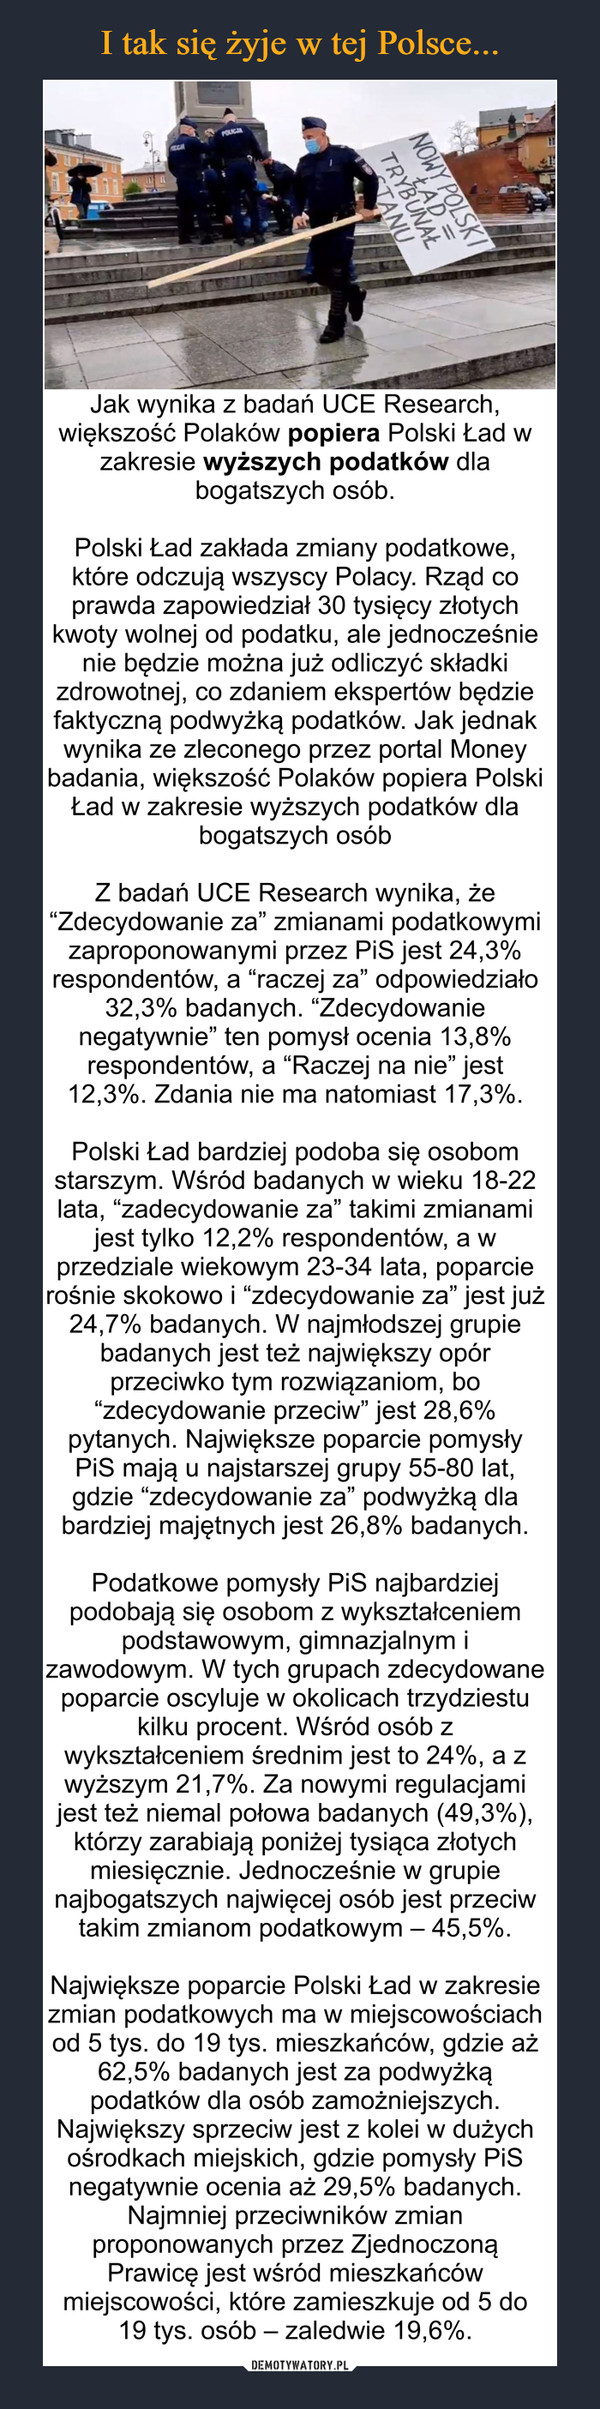  –  Jak wynika z badań UCE Research, większość Polaków popiera Polski Ład w zakresie wyższych podatków dla bogatszych osób.Polski Ład zakłada zmiany podatkowe, które odczują wszyscy Polacy. Rząd co prawda zapowiedział 30 tysięcy złotych kwoty wolnej od podatku, ale jednocześnie nie będzie można już odliczyć składki zdrowotnej, co zdaniem ekspertów będzie faktyczną podwyżką podatków. Jak jednak wynika ze zleconego przez portal Money badania, większość Polaków popiera Polski Ład w zakresie wyższych podatków dla bogatszych osóbZ badań UCE Research wynika, że “Zdecydowanie za” zmianami podatkowymi zaproponowanymi przez PiS jest 24,3% respondentów, a “raczej za” odpowiedziało 32,3% badanych. “Zdecydowanie negatywnie” ten pomysł ocenia 13,8% respondentów, a “Raczej na nie” jest 12,3%. Zdania nie ma natomiast 17,3%.Polski Ład bardziej podoba się osobom starszym. Wśród badanych w wieku 18-22 lata, “zadecydowanie za” takimi zmianami jest tylko 12,2% respondentów, a w przedziale wiekowym 23-34 lata, poparcie rośnie skokowo i “zdecydowanie za” jest już 24,7% badanych. W najmłodszej grupie badanych jest też największy opór przeciwko tym rozwiązaniom, bo “zdecydowanie przeciw” jest 28,6% pytanych. Największe poparcie pomysły PiS mają u najstarszej grupy 55-80 lat, gdzie “zdecydowanie za” podwyżką dla bardziej majętnych jest 26,8% badanych.Podatkowe pomysły PiS najbardziej podobają się osobom z wykształceniem podstawowym, gimnazjalnym i zawodowym. W tych grupach zdecydowane poparcie oscyluje w okolicach trzydziestu kilku procent. Wśród osób z wykształceniem średnim jest to 24%, a z wyższym 21,7%. Za nowymi regulacjami jest też niemal połowa badanych (49,3%), którzy zarabiają poniżej tysiąca złotych miesięcznie. Jednocześnie w grupie najbogatszych najwięcej osób jest przeciw takim zmianom podatkowym – 45,5%.Największe poparcie Polski Ład w zakresie zmian podatkowych ma w miejscowościach od 5 tys. do 19 tys. mieszkańców, gdzie aż 62,5% badanych jest za podwyżką podatków dla osób zamożniejszych. Największy sprzeciw jest z kolei w dużych ośrodkach miejskich, gdzie pomysły PiS negatywnie ocenia aż 29,5% badanych. Najmniej przeciwników zmian proponowanych przez Zjednoczoną Prawicę jest wśród mieszkańców miejscowości, które zamieszkuje od 5 do 19 tys. osób – zaledwie 19,6%.